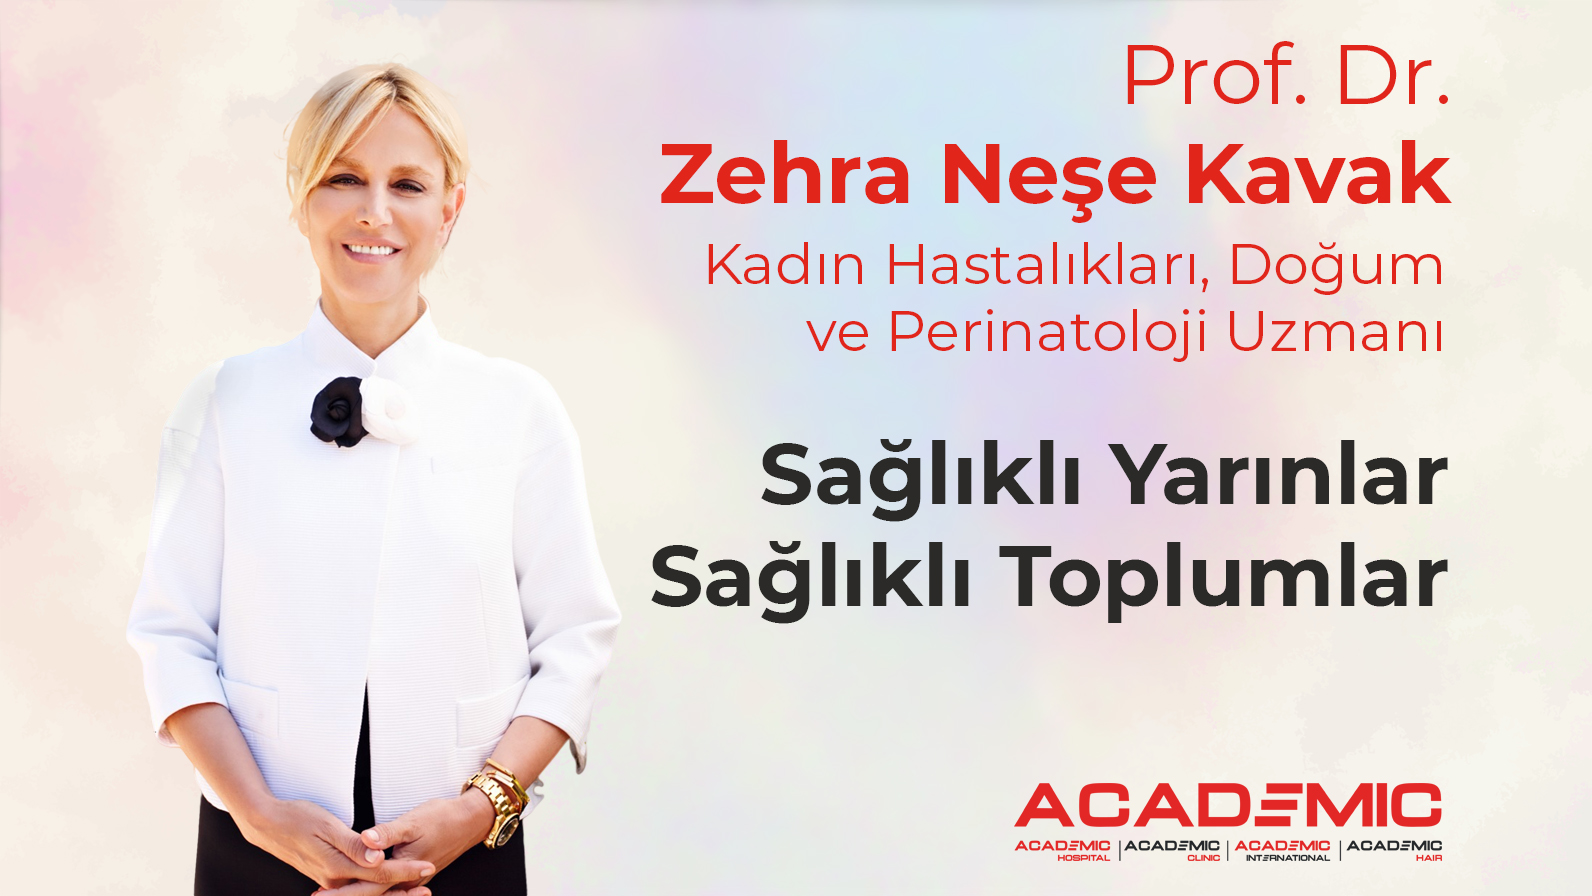 Prof. Dr. Zehra Neşe Kavak Yüz Yılın Hastalığı Yağlı Karaciğer Semineri Hakkında Bilgiler Verdi